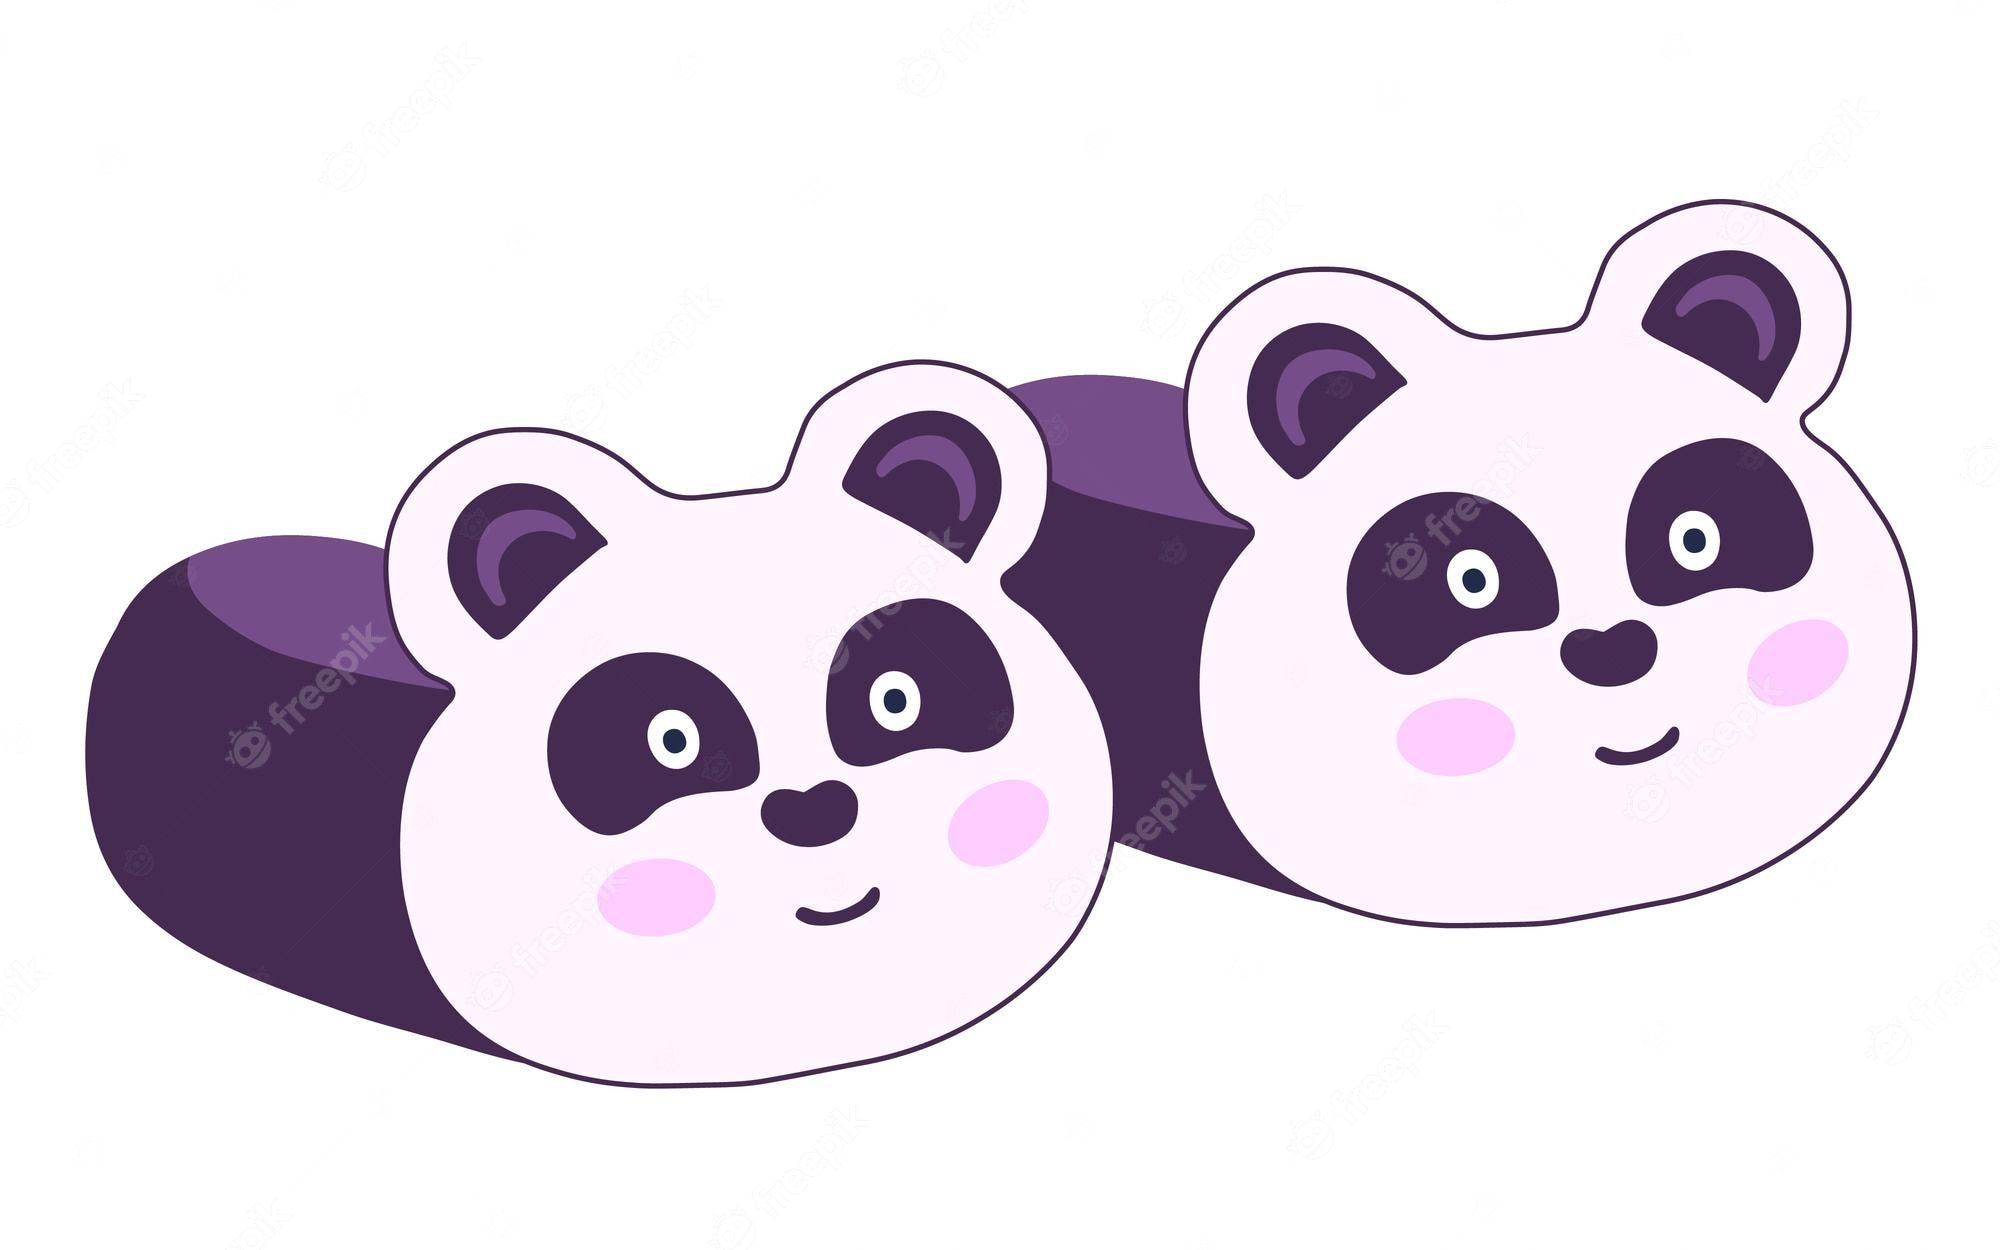 A pair of cute cartoon panda slippers. - Panda